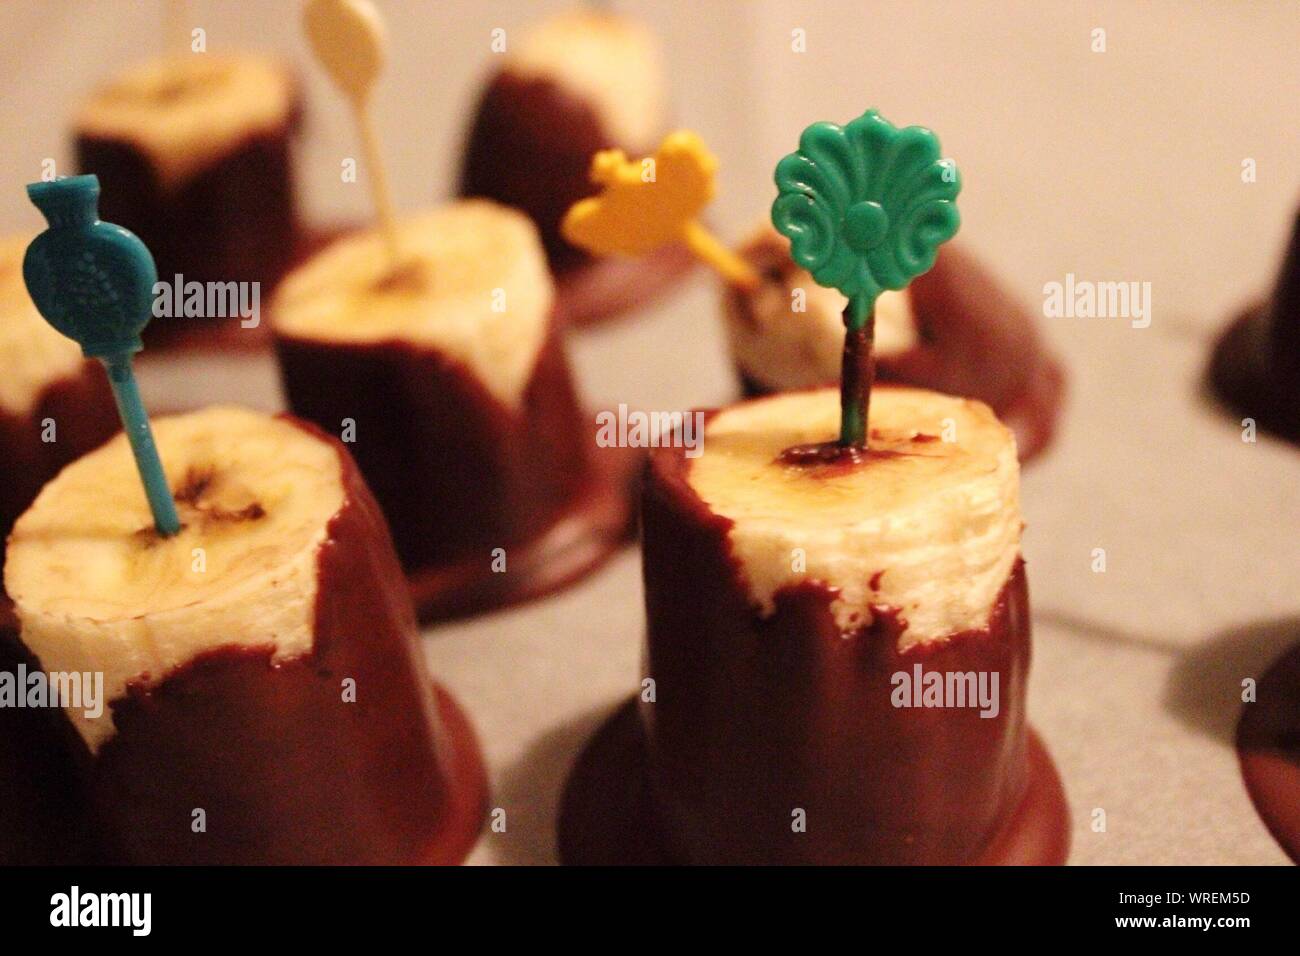 Rodajas de plátano en el Chocolate Foto de stock